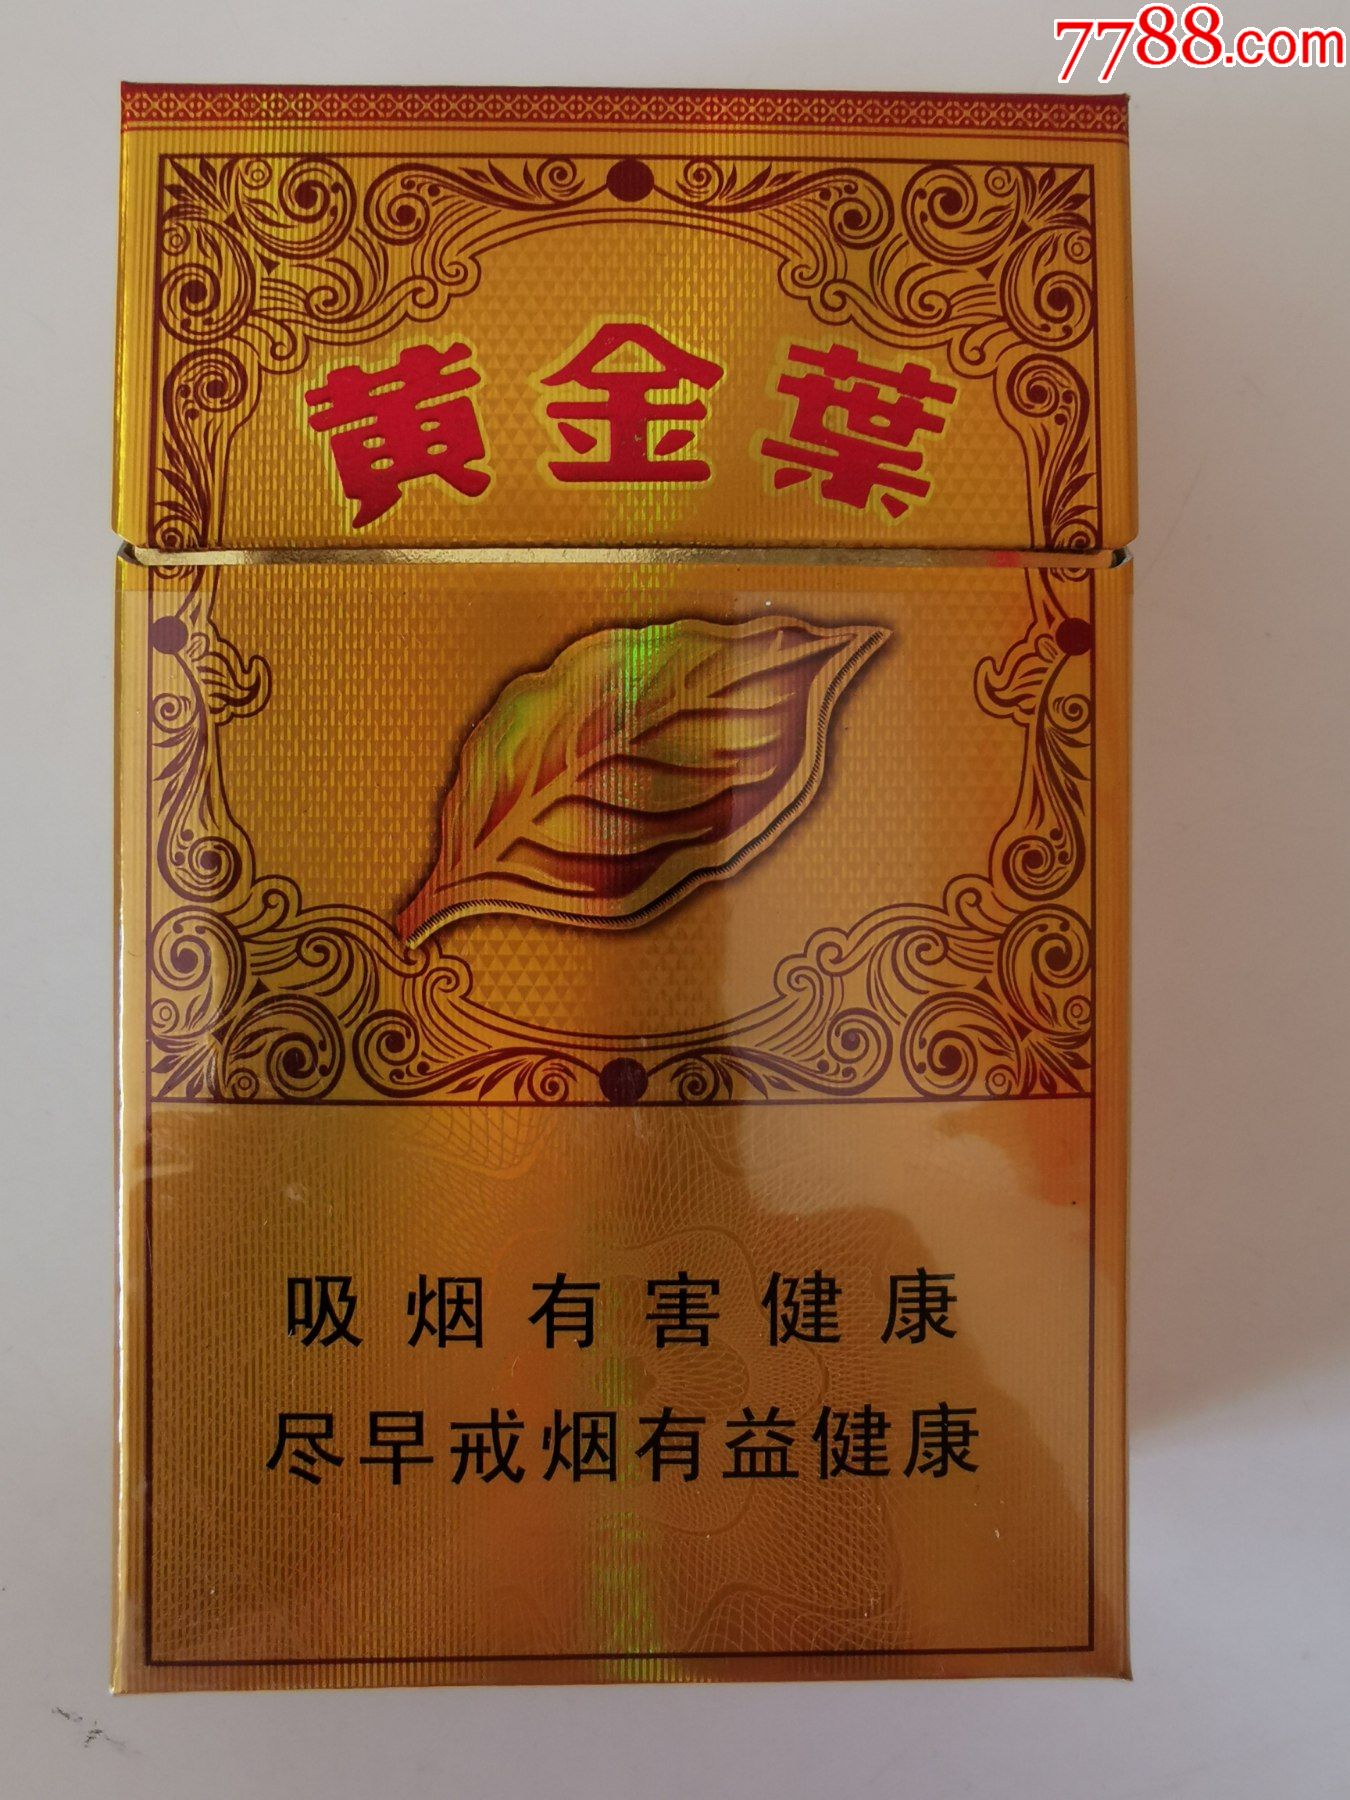 黄金叶香烟宽盒图片